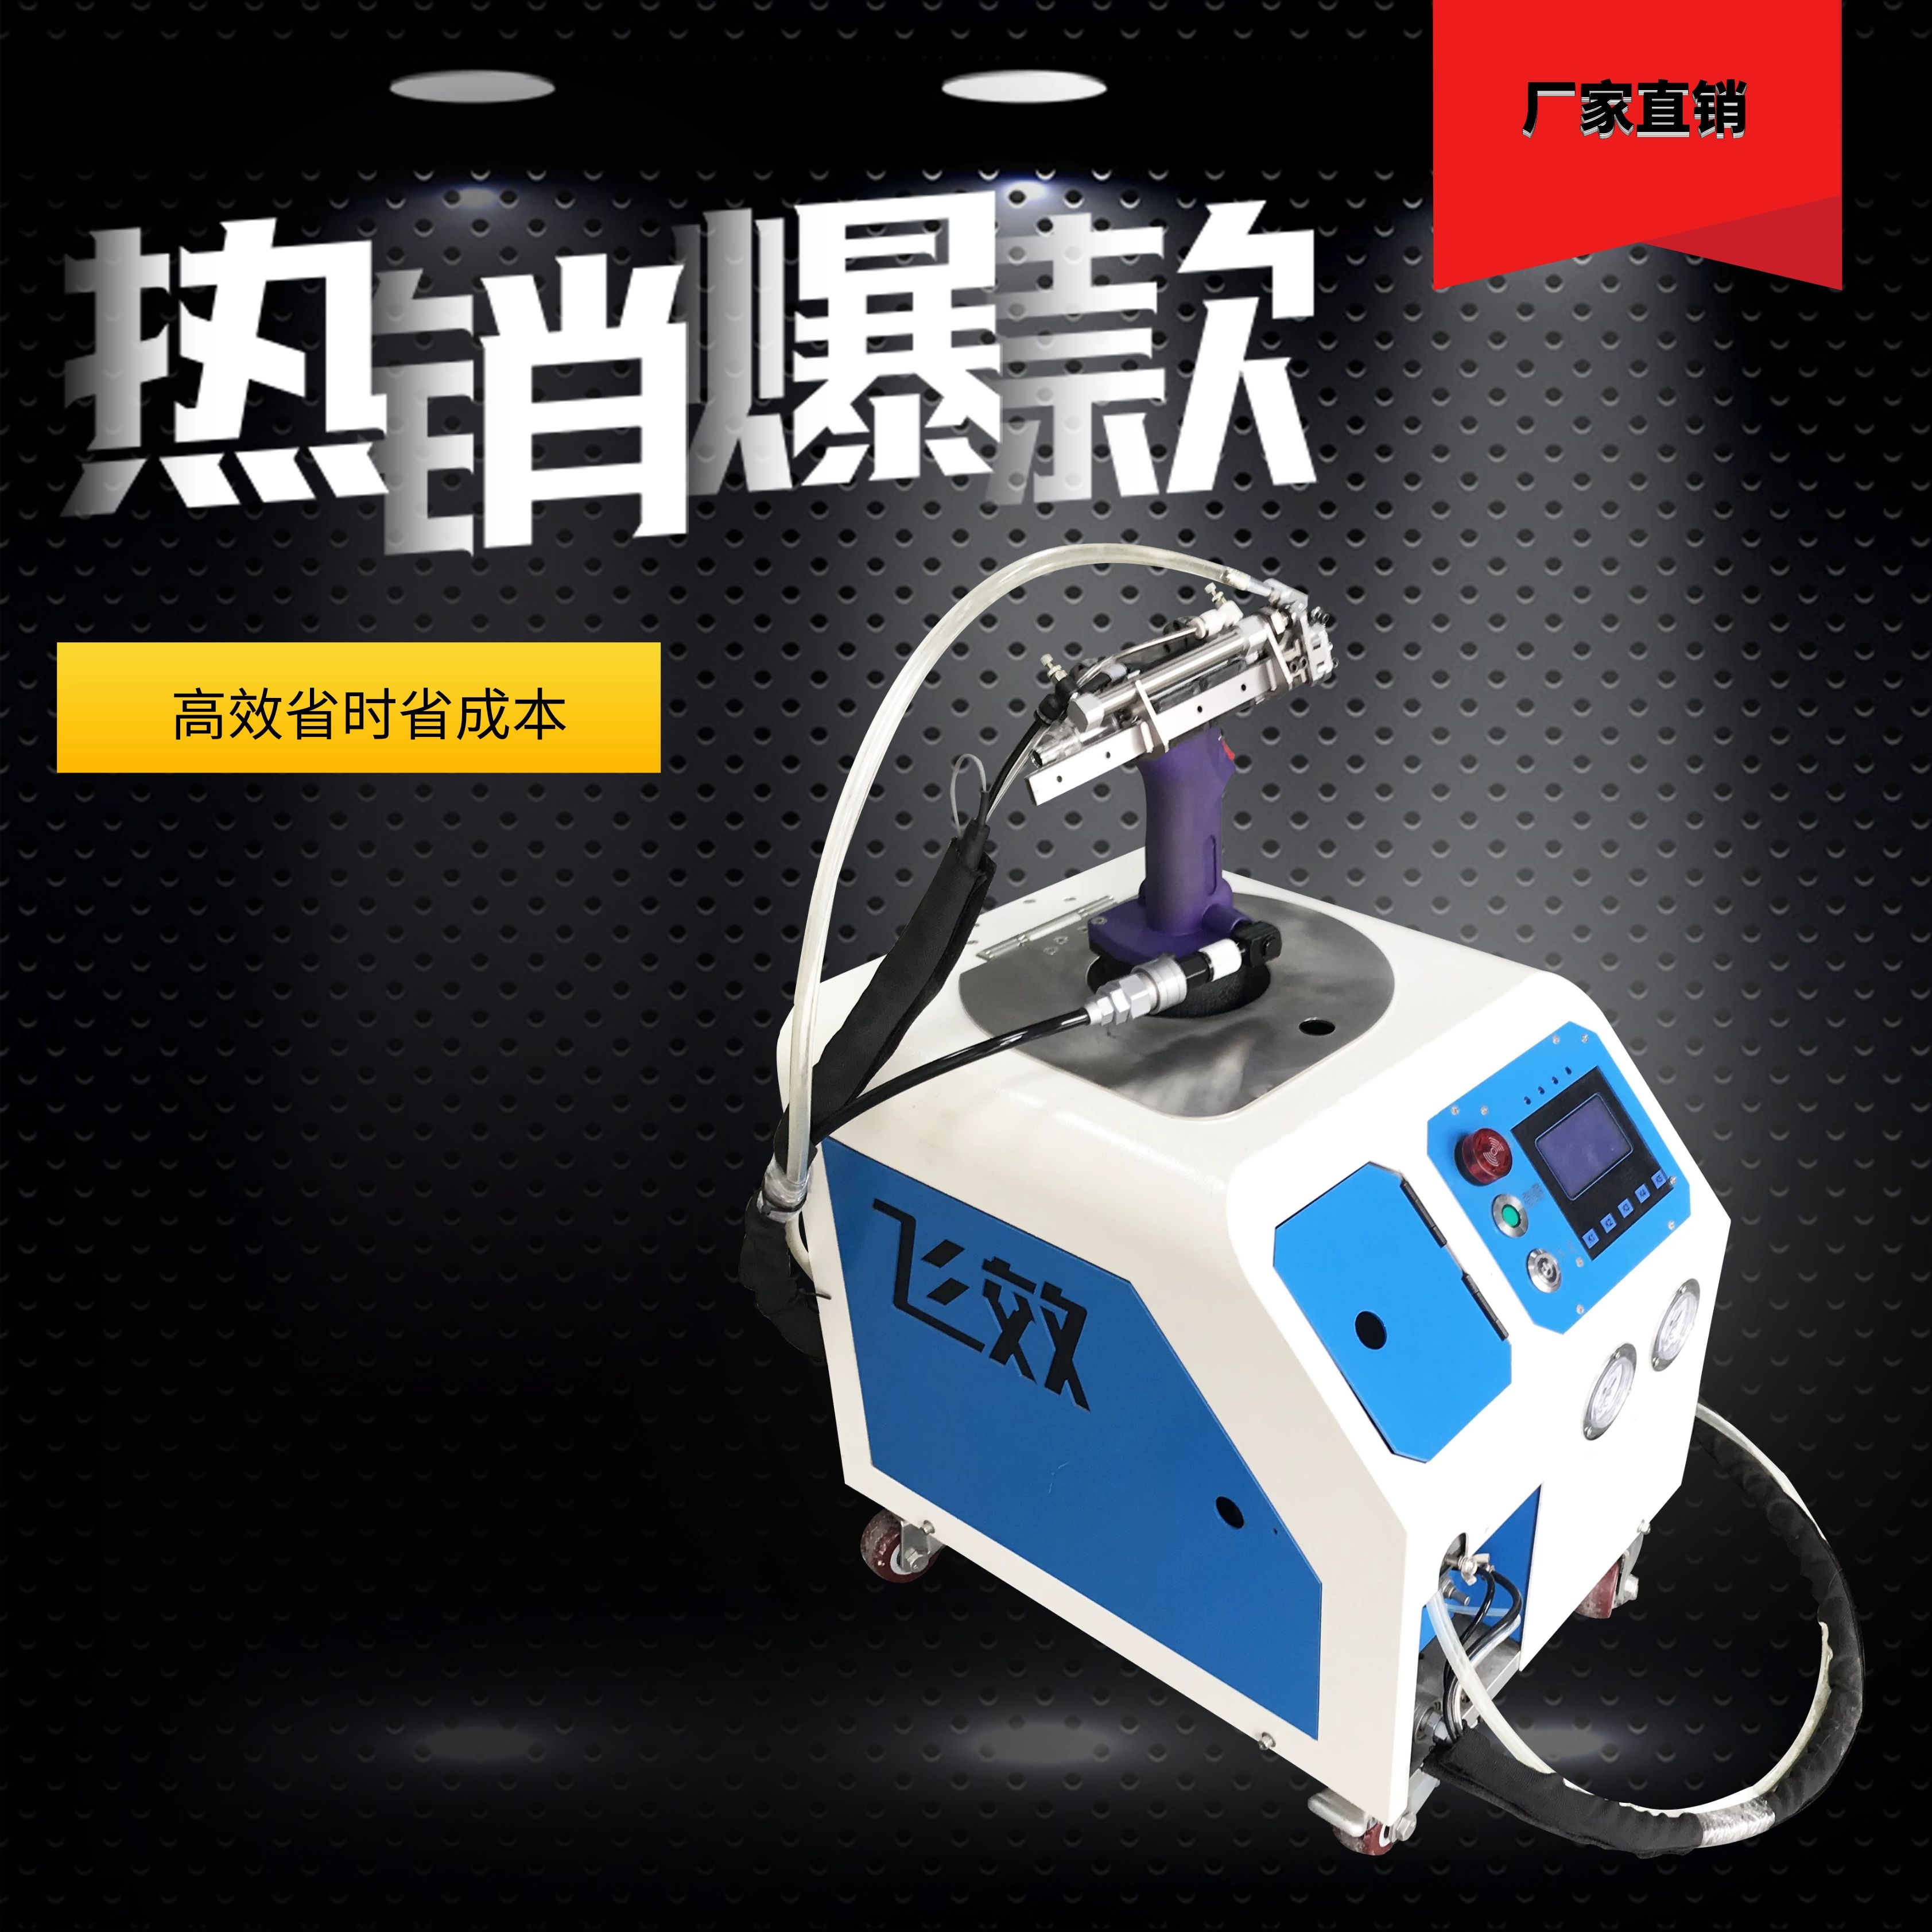 广州自动抽芯拉钉机批发价格-东莞市飞效智能科技有限公司